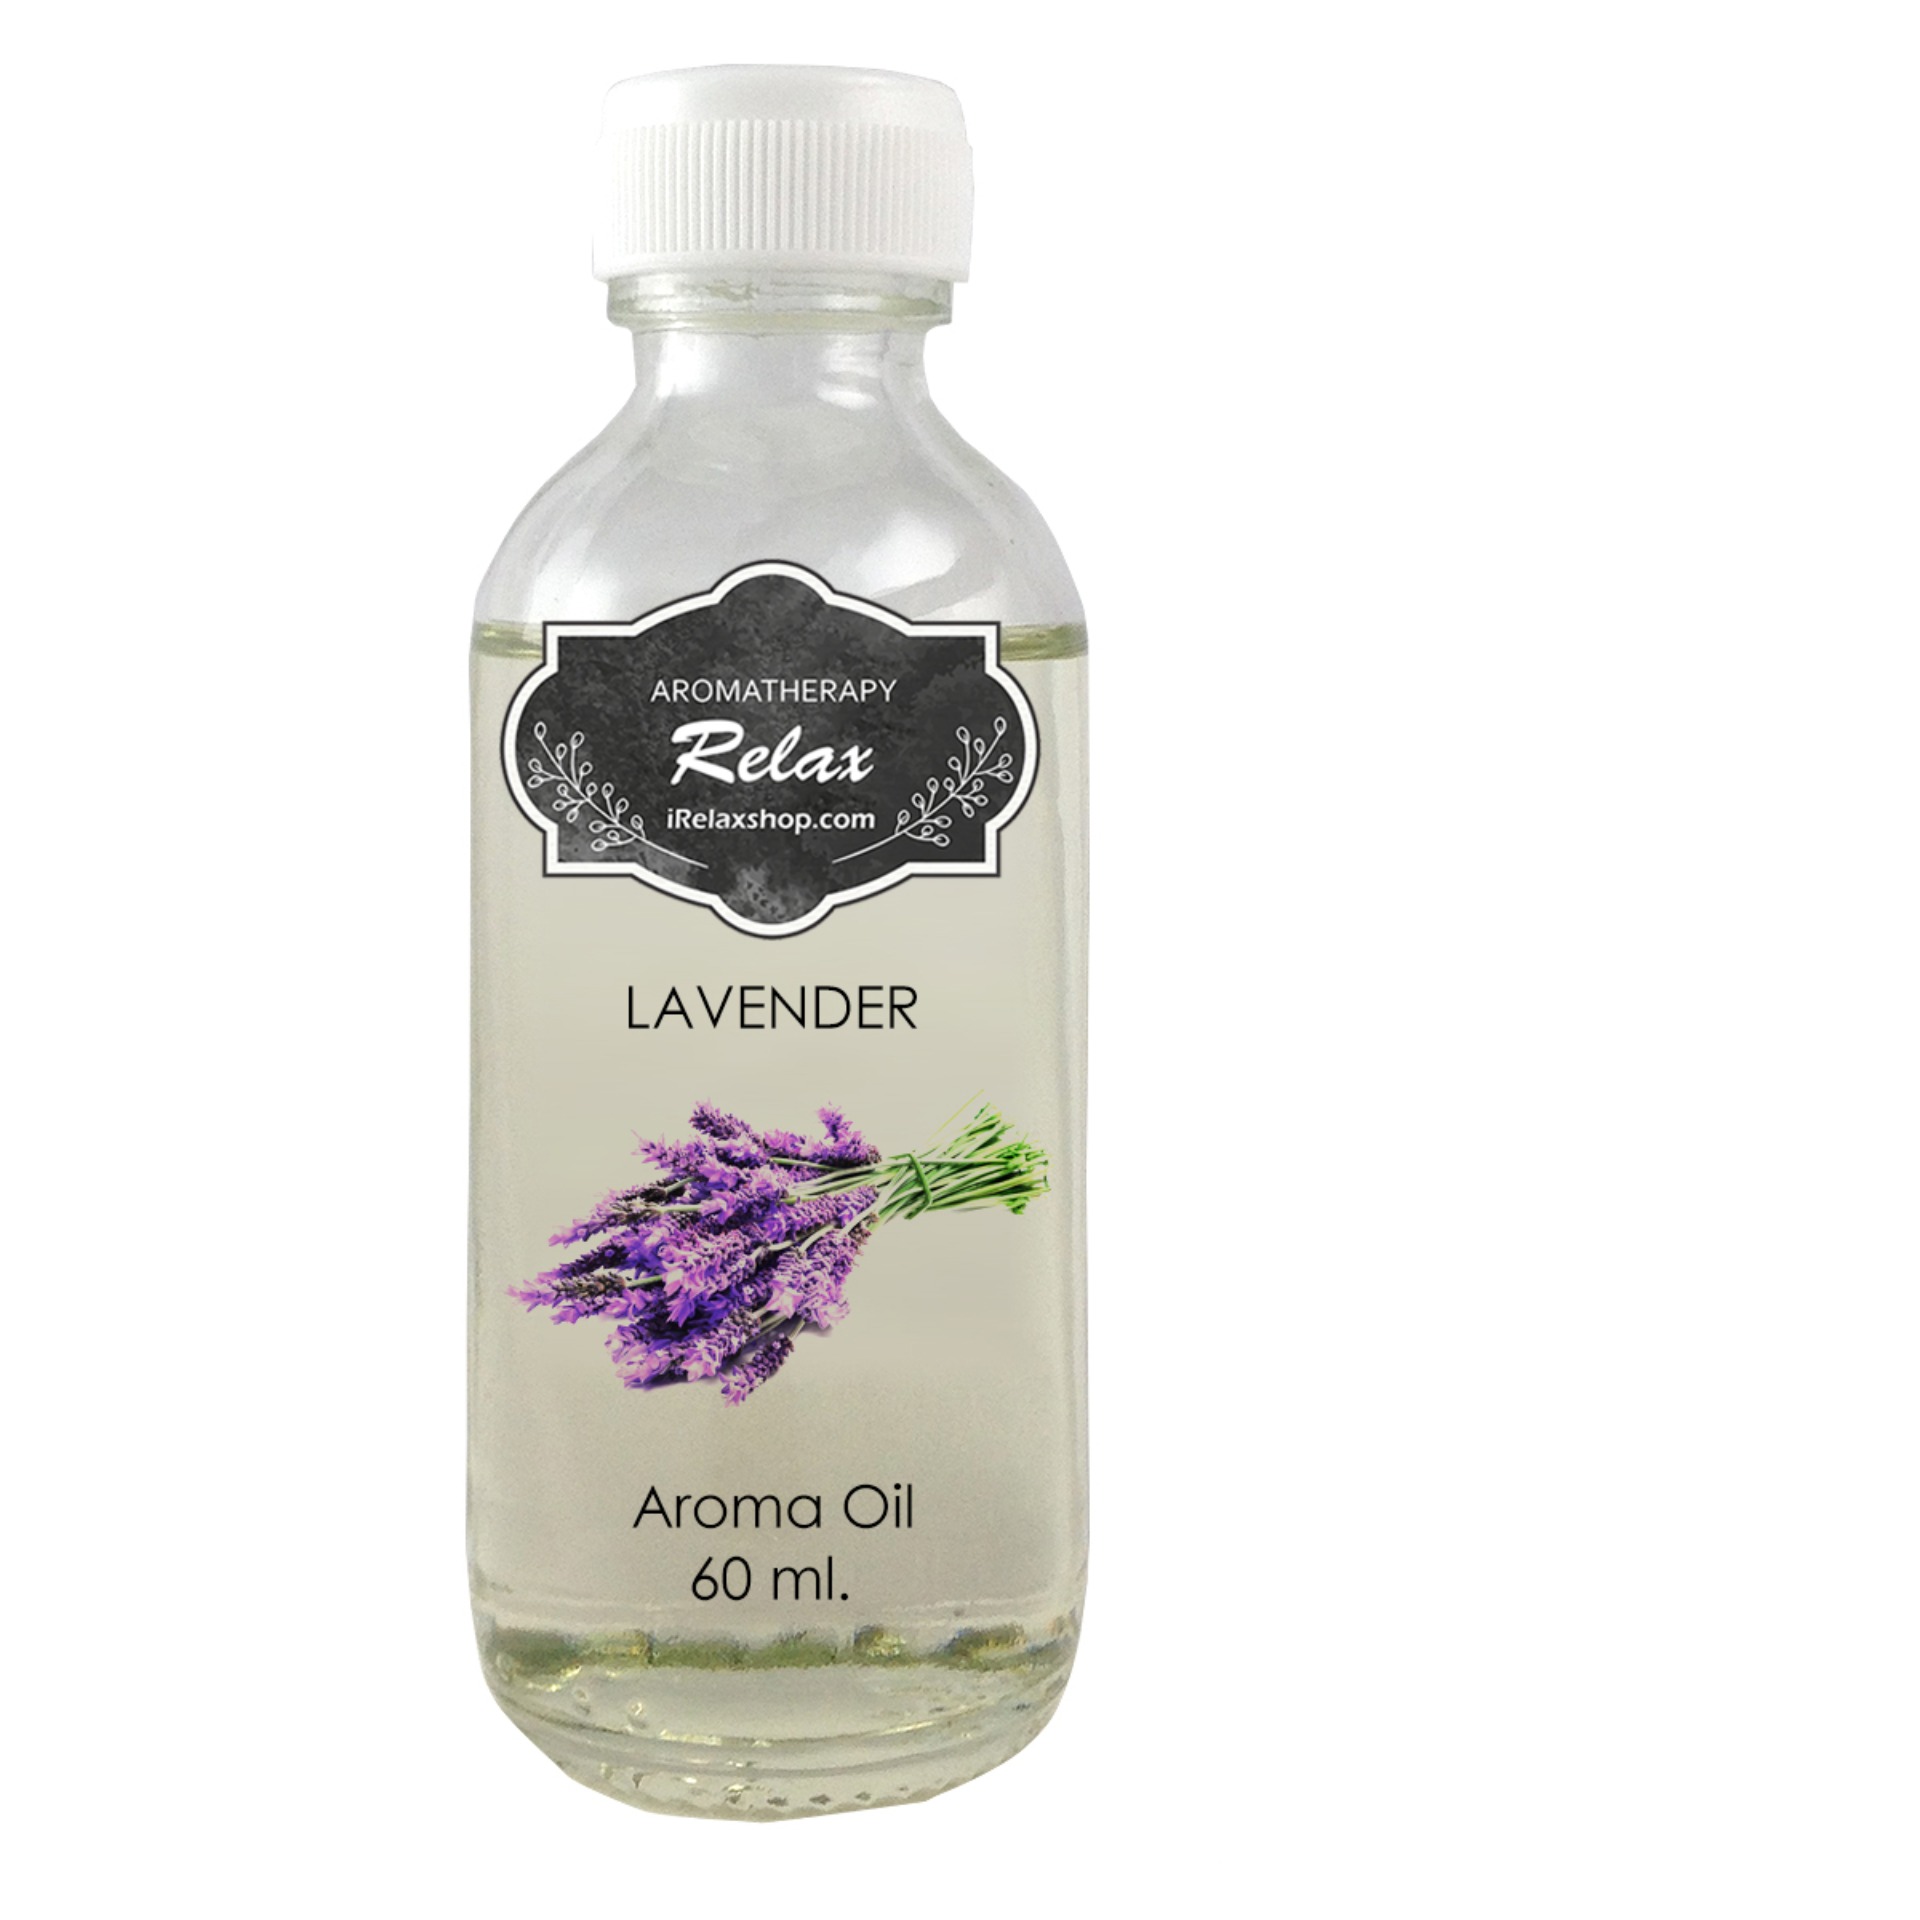 ลาเวนเดอร์ lavender น้ำมันหอมระเหย ขนาด 60 ML อโรม่า ออย Aroma Oil